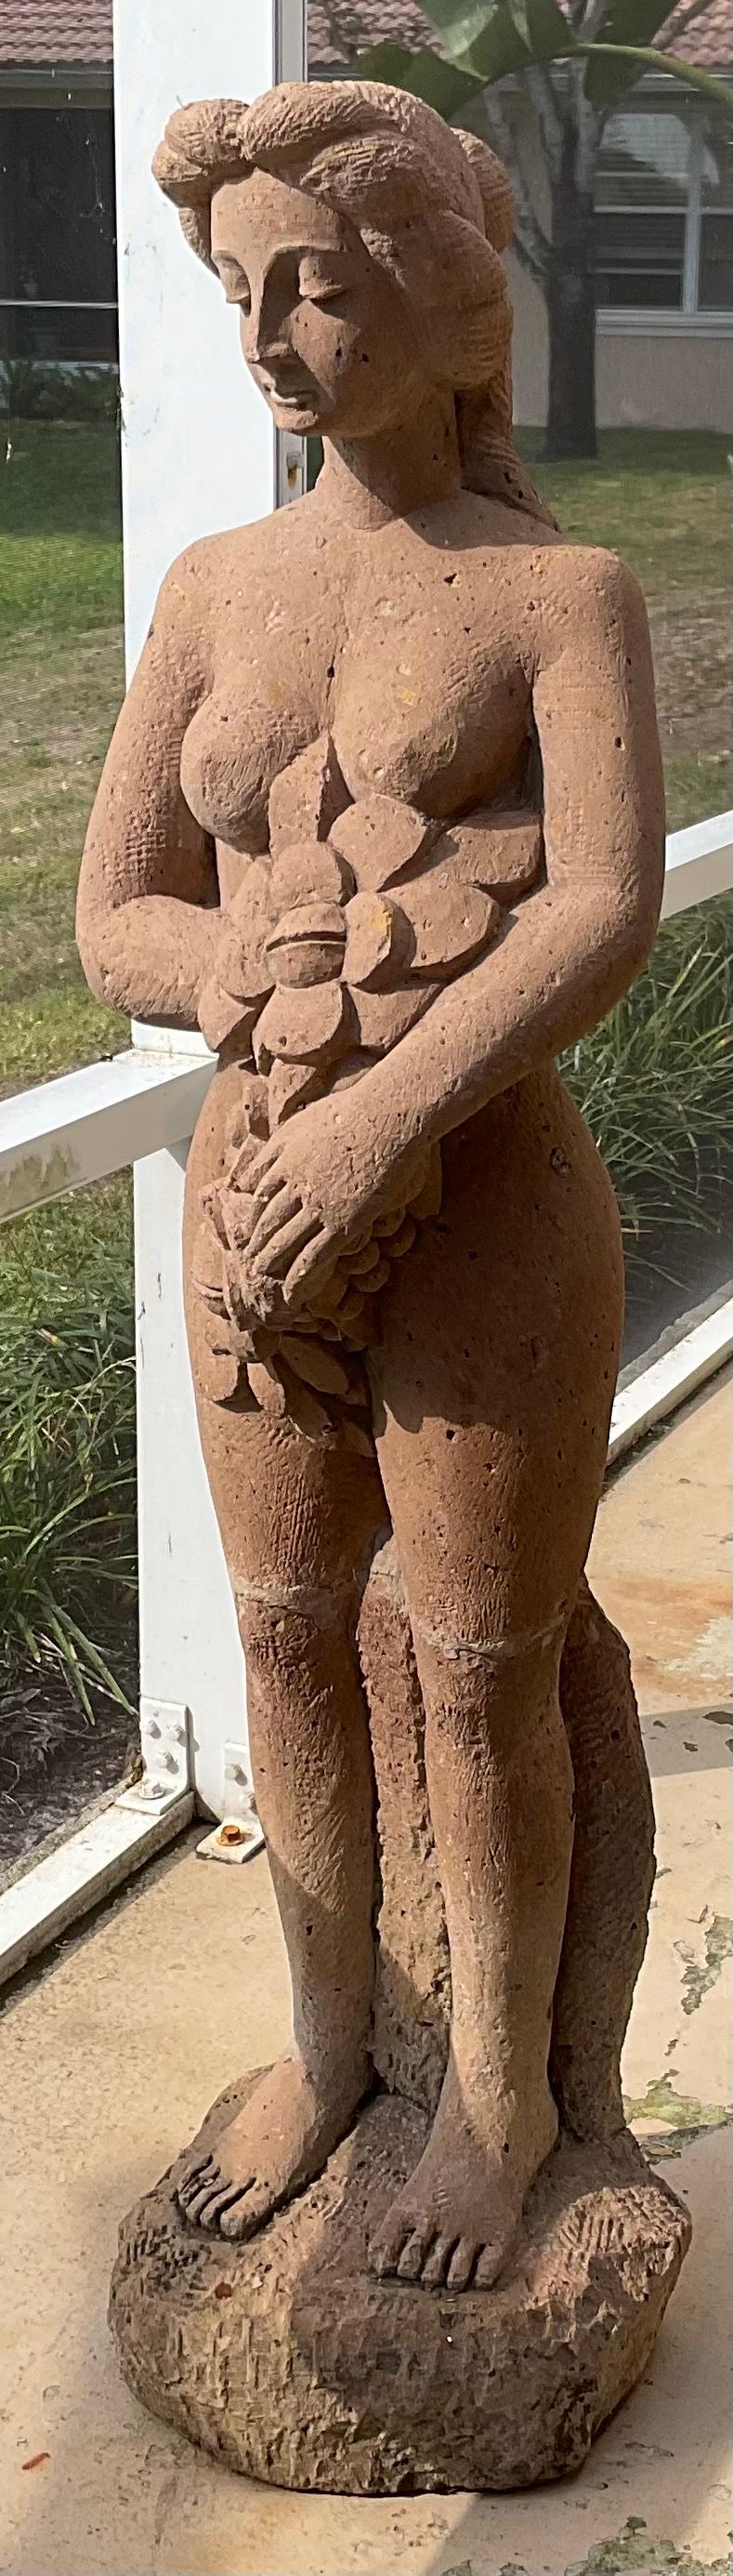 Magnifique sculpture en grès sculptée à la main d'une demi-nudité de femmes debout dans le style grec classique. Une sculpture extérieure attrayante ou un objet d'art exceptionnel à l'intérieur.
    